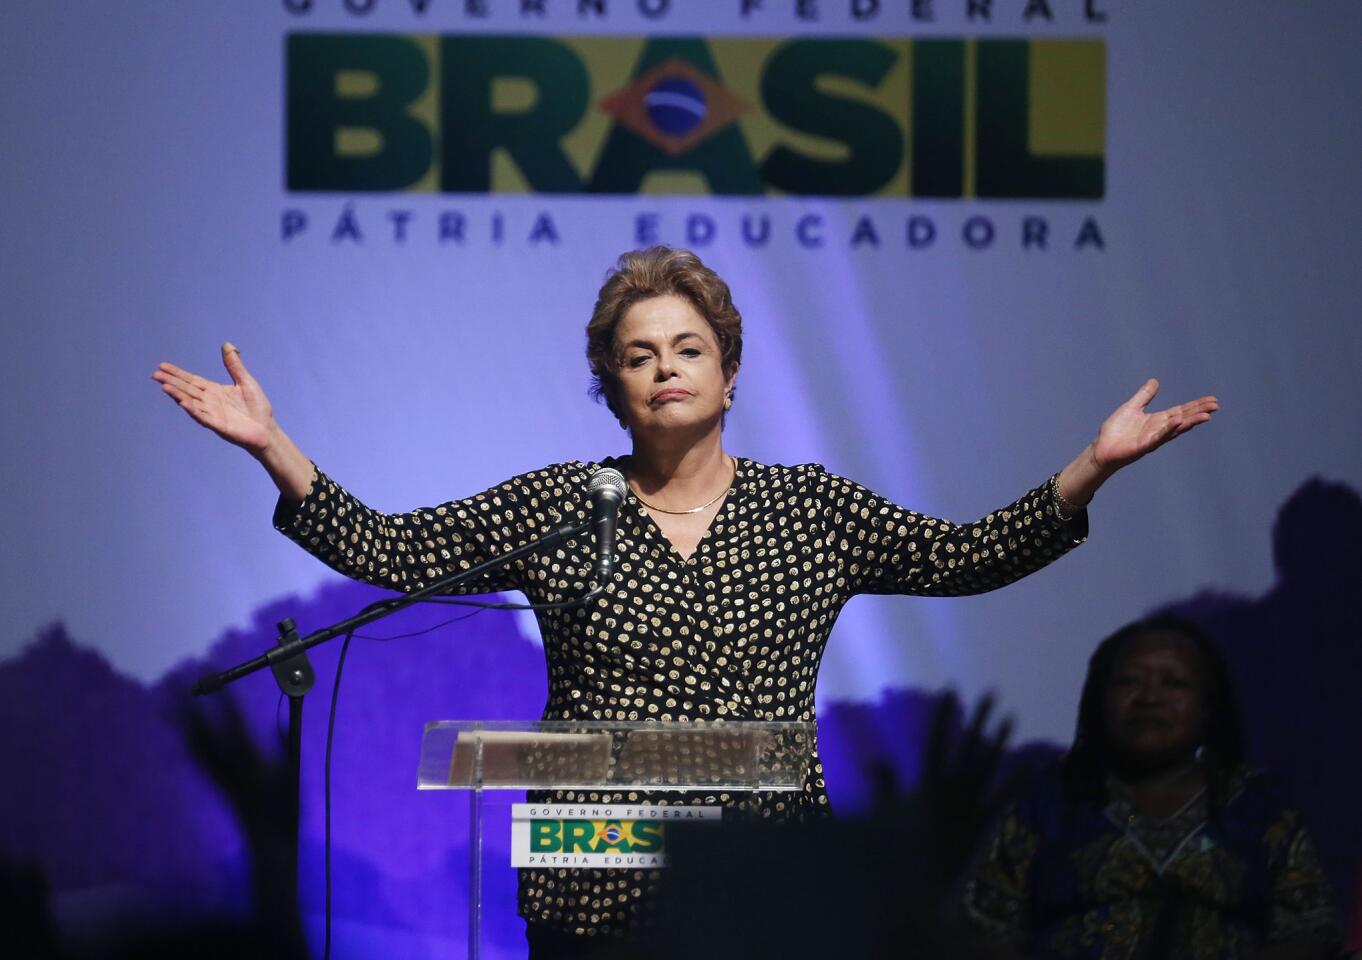 Political turmoil in Brazil